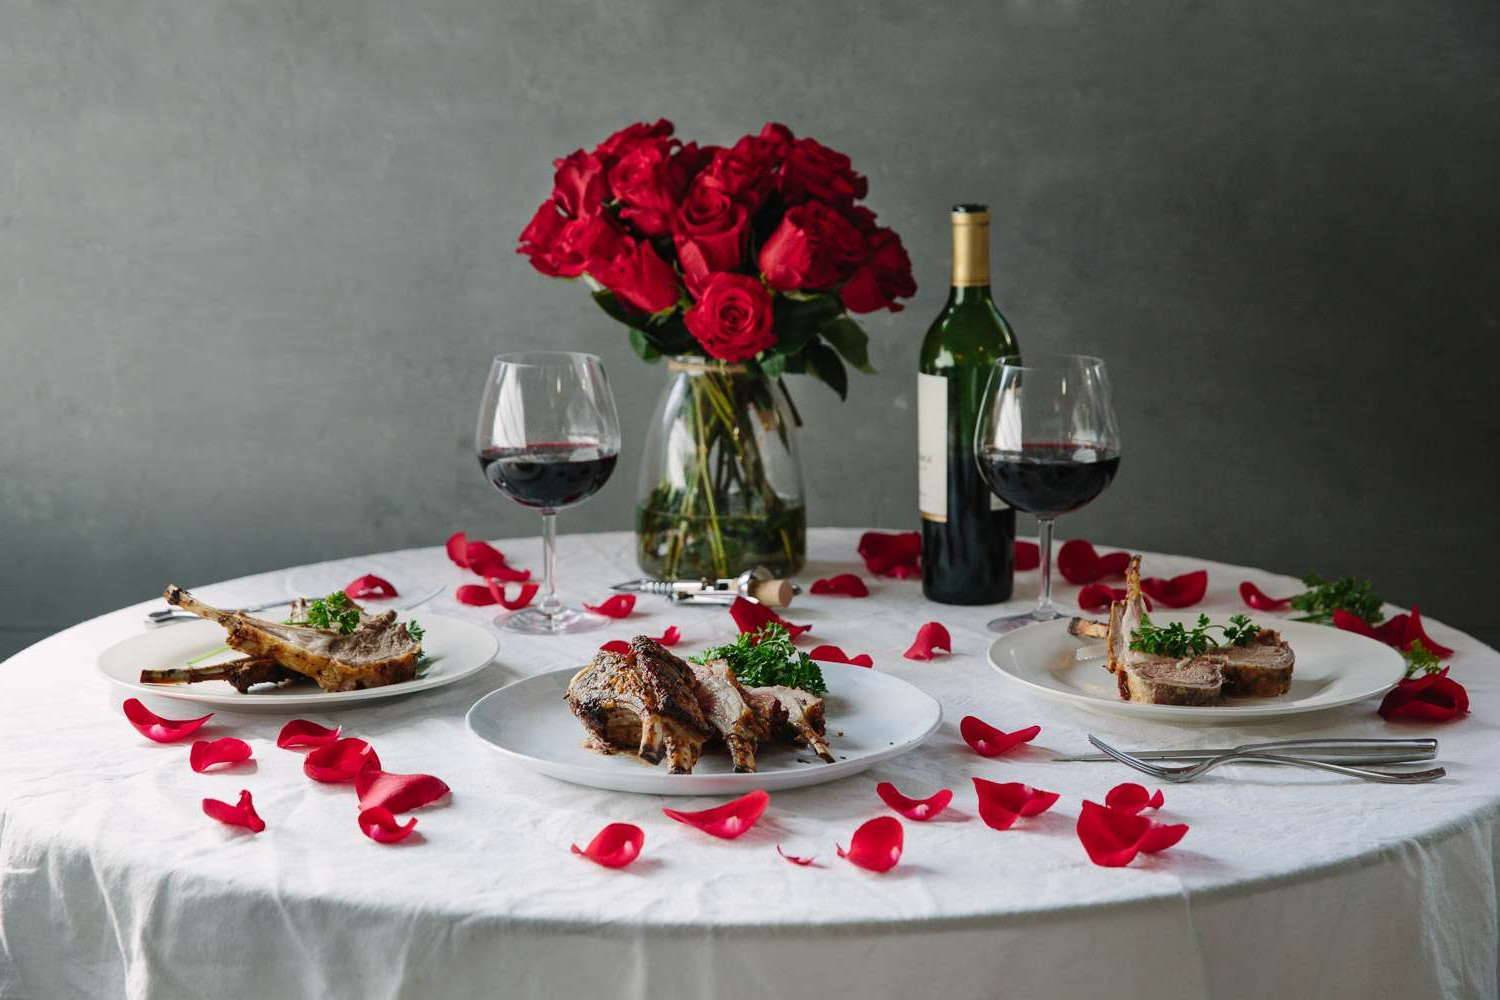 Романтический ужин для двоих на день влюбленных (14 февраля 2020) – рецепты с фото